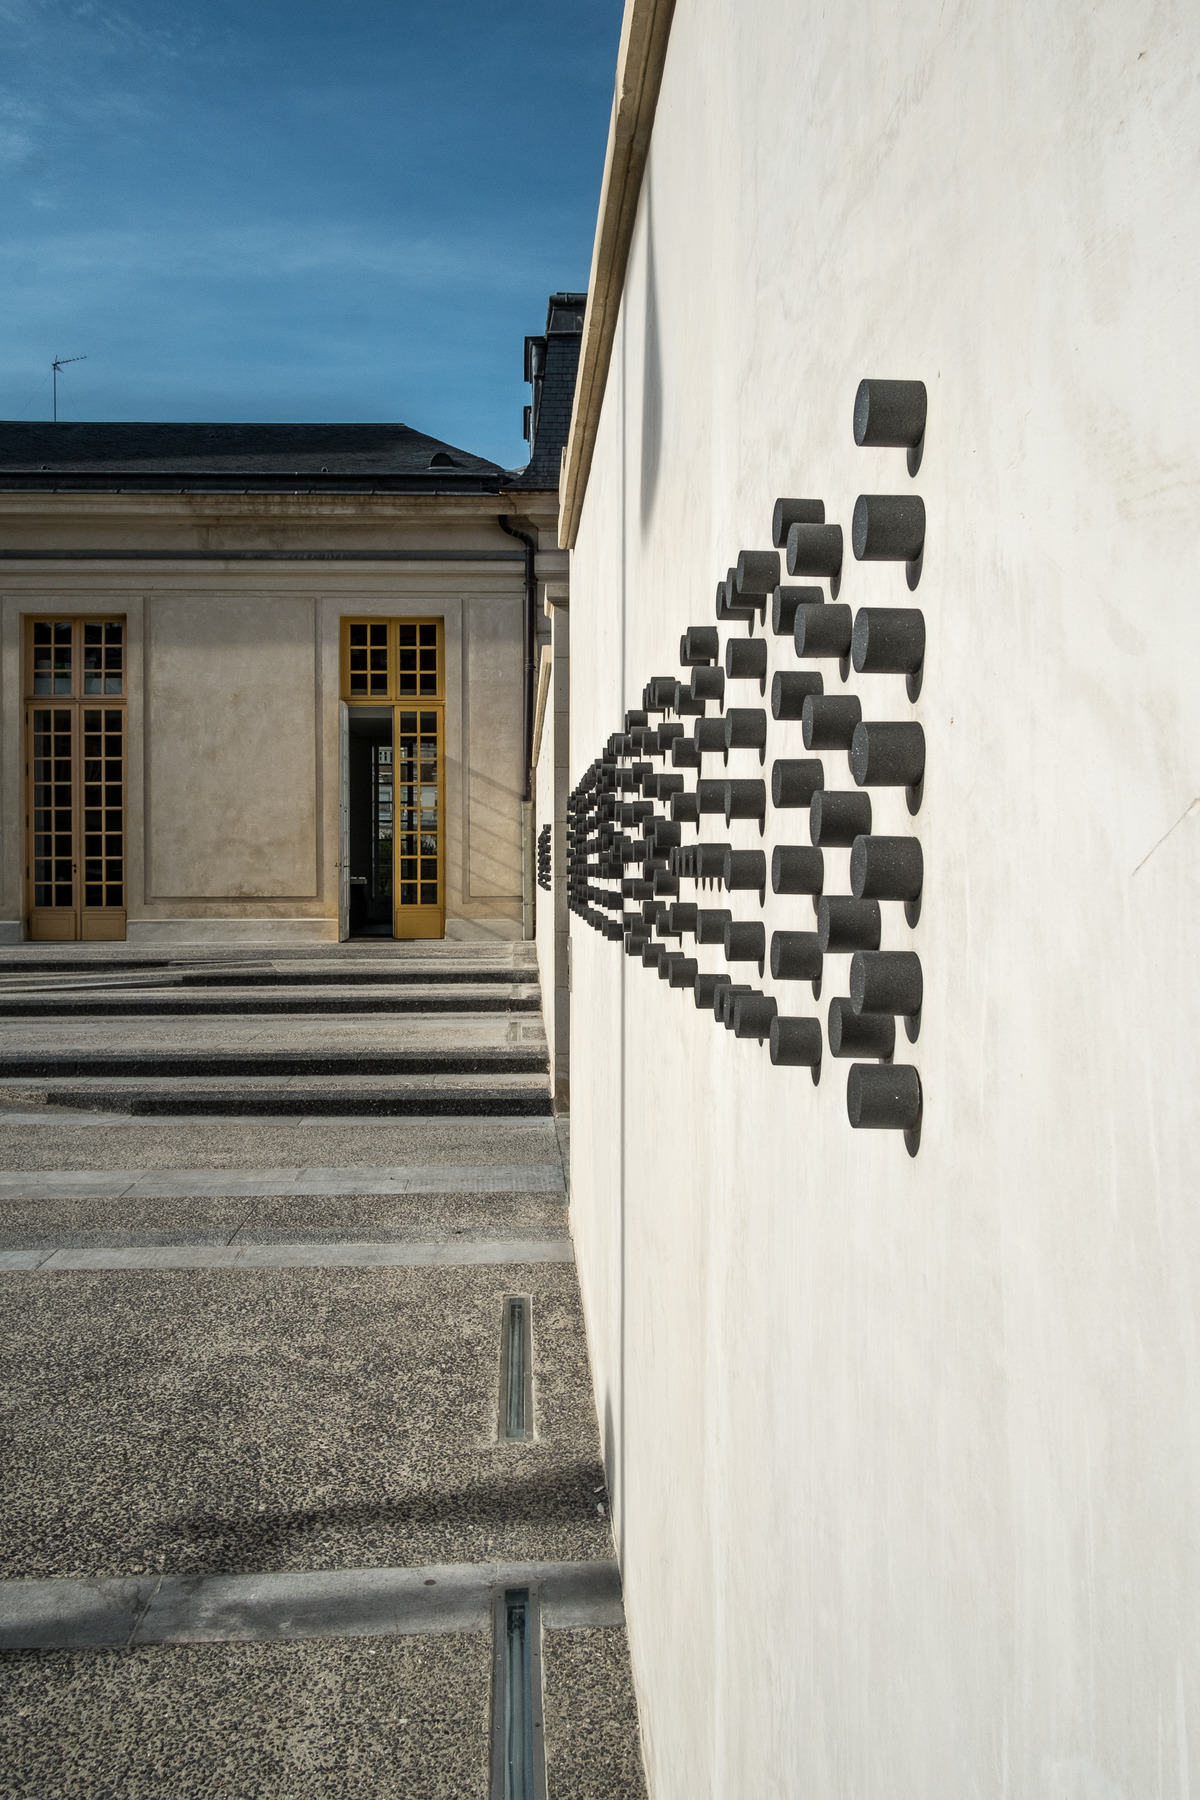 当代艺术中心Pavillon Vendôme标识系统设计©Toan Vu-Huu & Wanja Ledowski